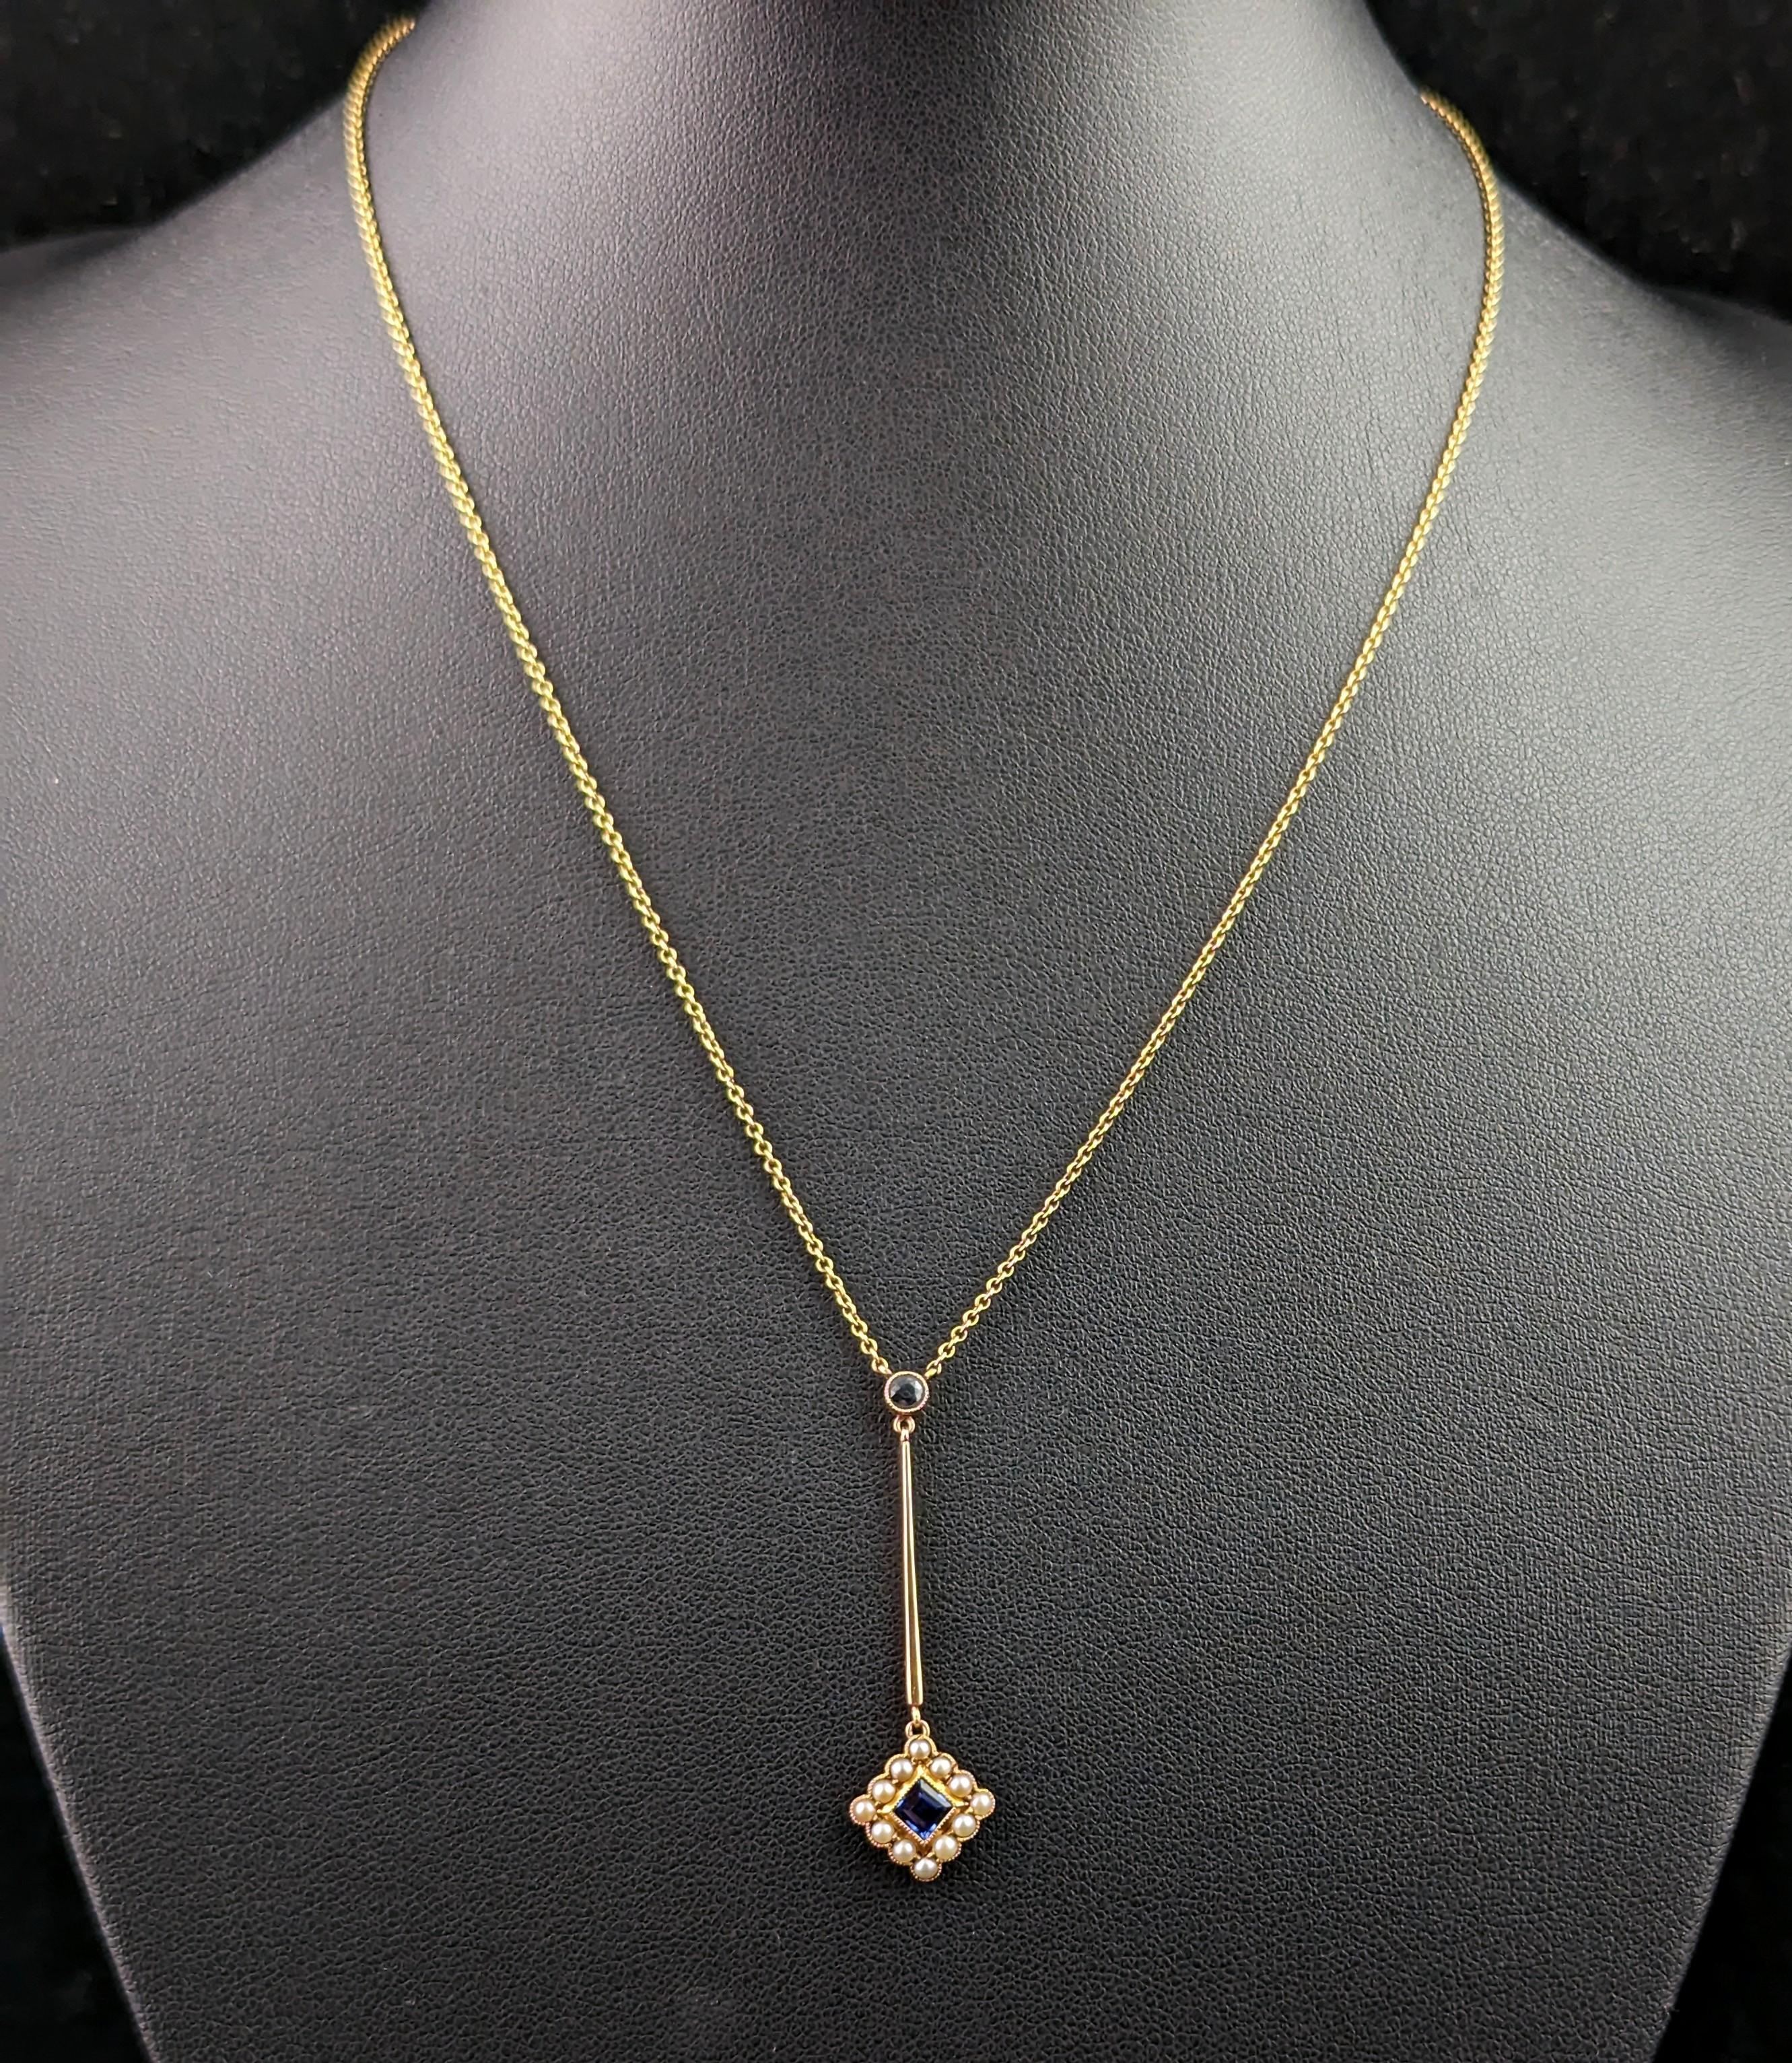 Diese antike Saphir- und Perlenhalskette aus 15-karätigem Gelbgold ist einfach göttlich. Sie ist zart und besticht dennoch durch ihre charmante, elegante Schönheit!

Die Halskette ist eine Lariat- oder Y-Halskette, die aus einer feinen Gliederkette